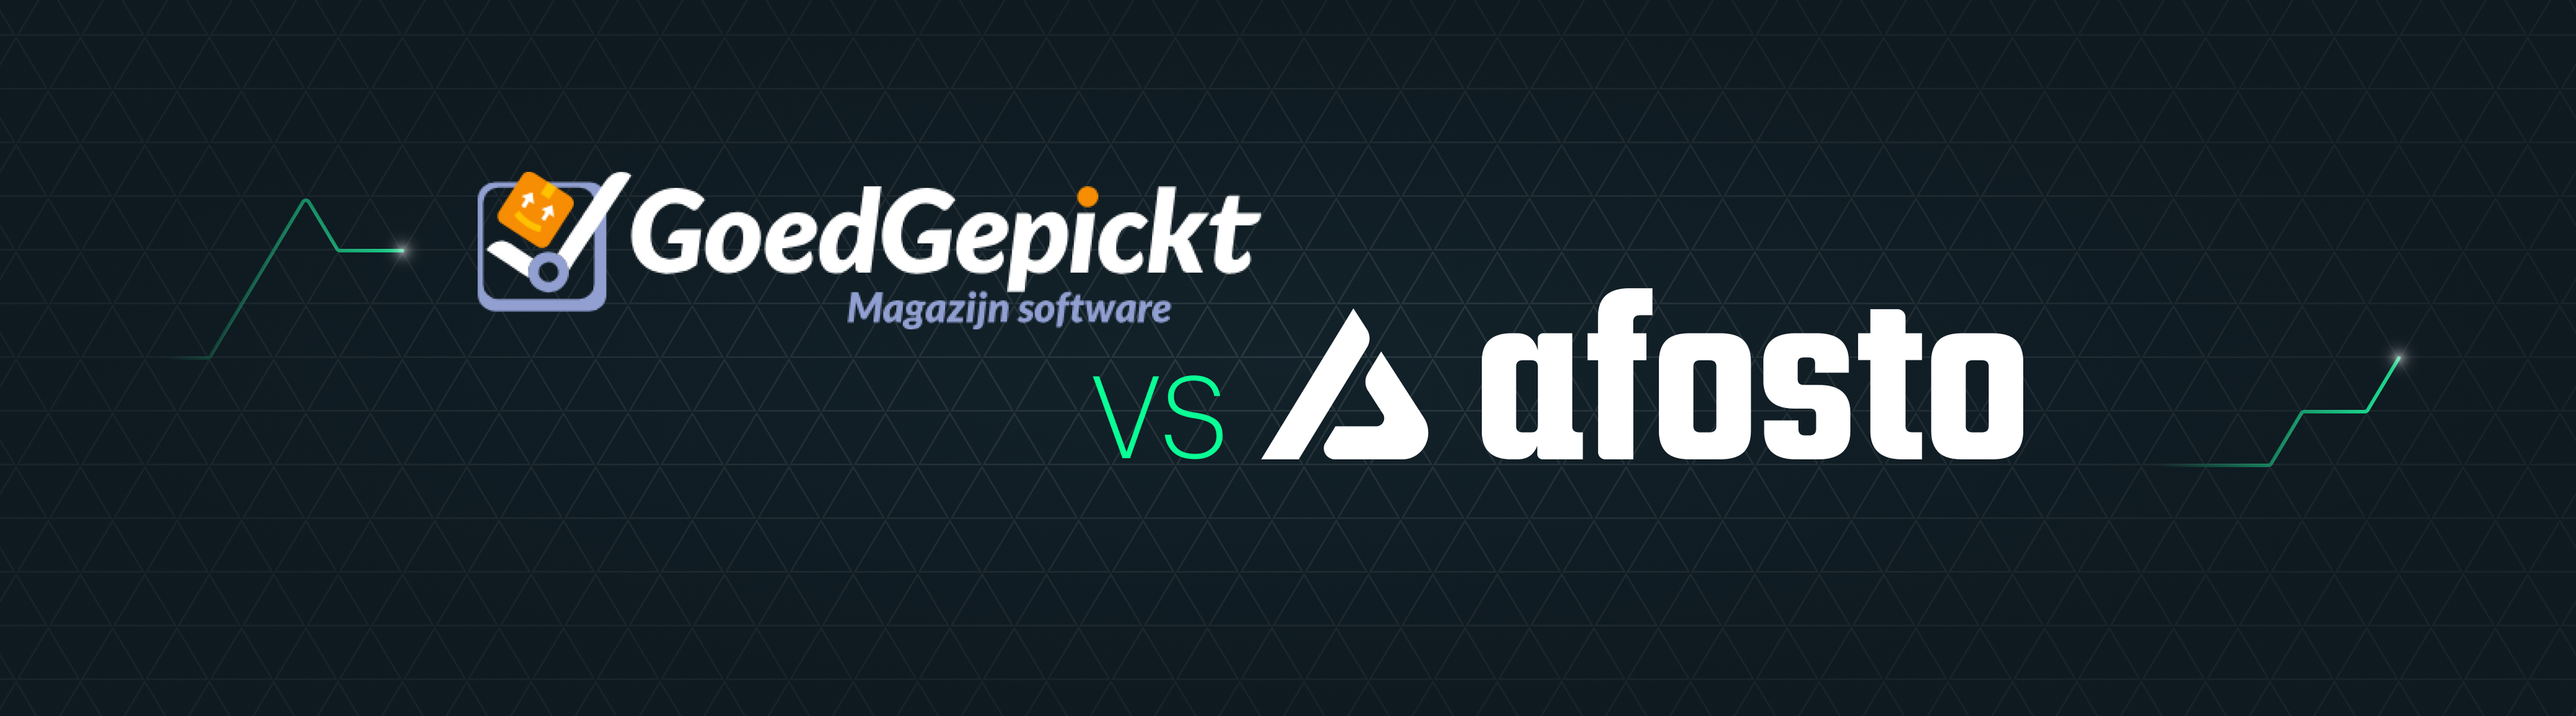 GoedGepickt vs Afosto | Banner